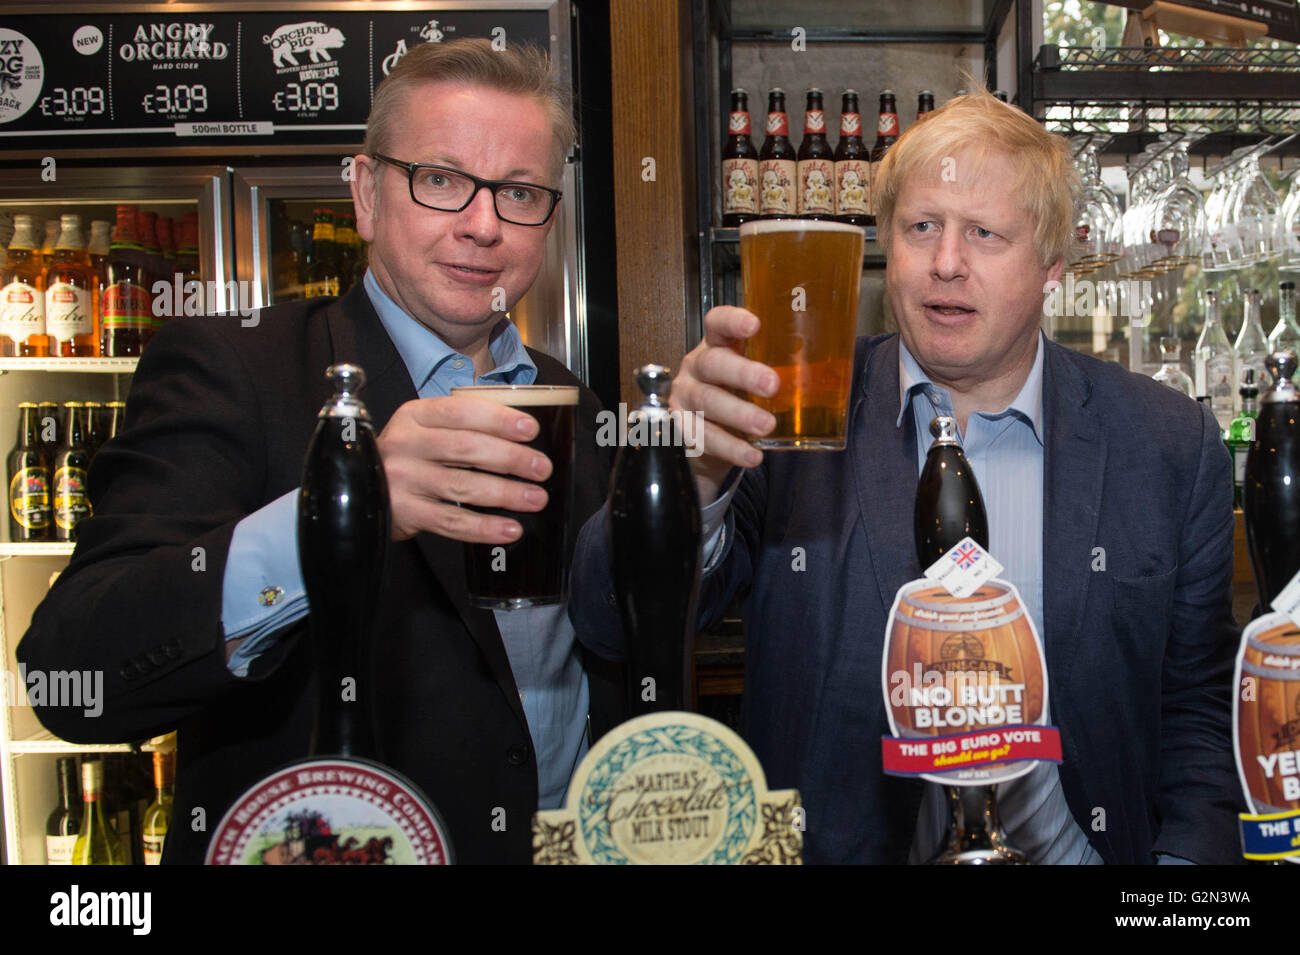 Michael Gove e Boris Johnson (destra) tirare pinte di birra presso la vecchia cappella pub in Darwen Lancashire, come parte della votazione lasciare UE campagna referendaria. Foto Stock